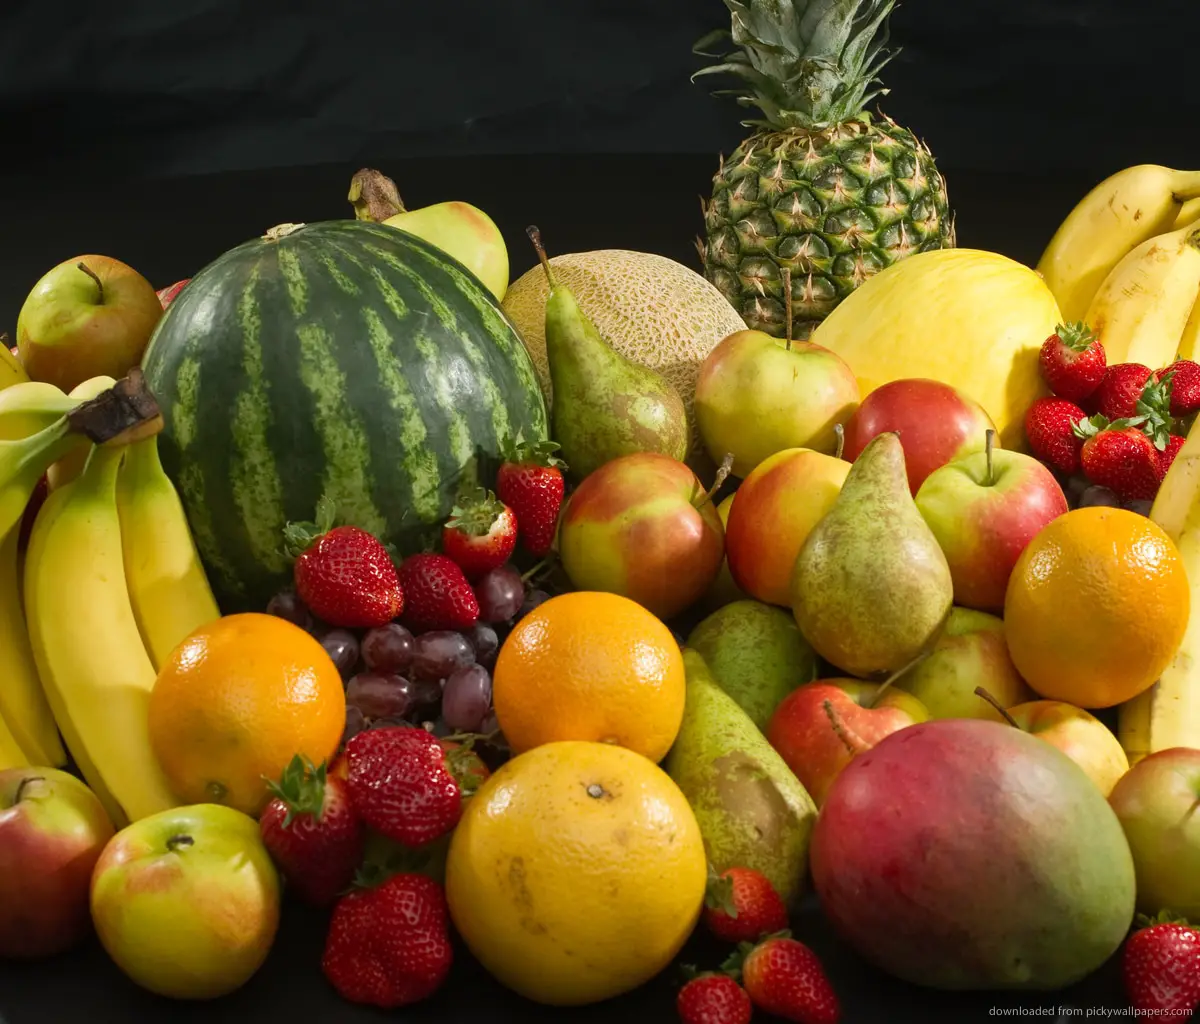 Fruits: